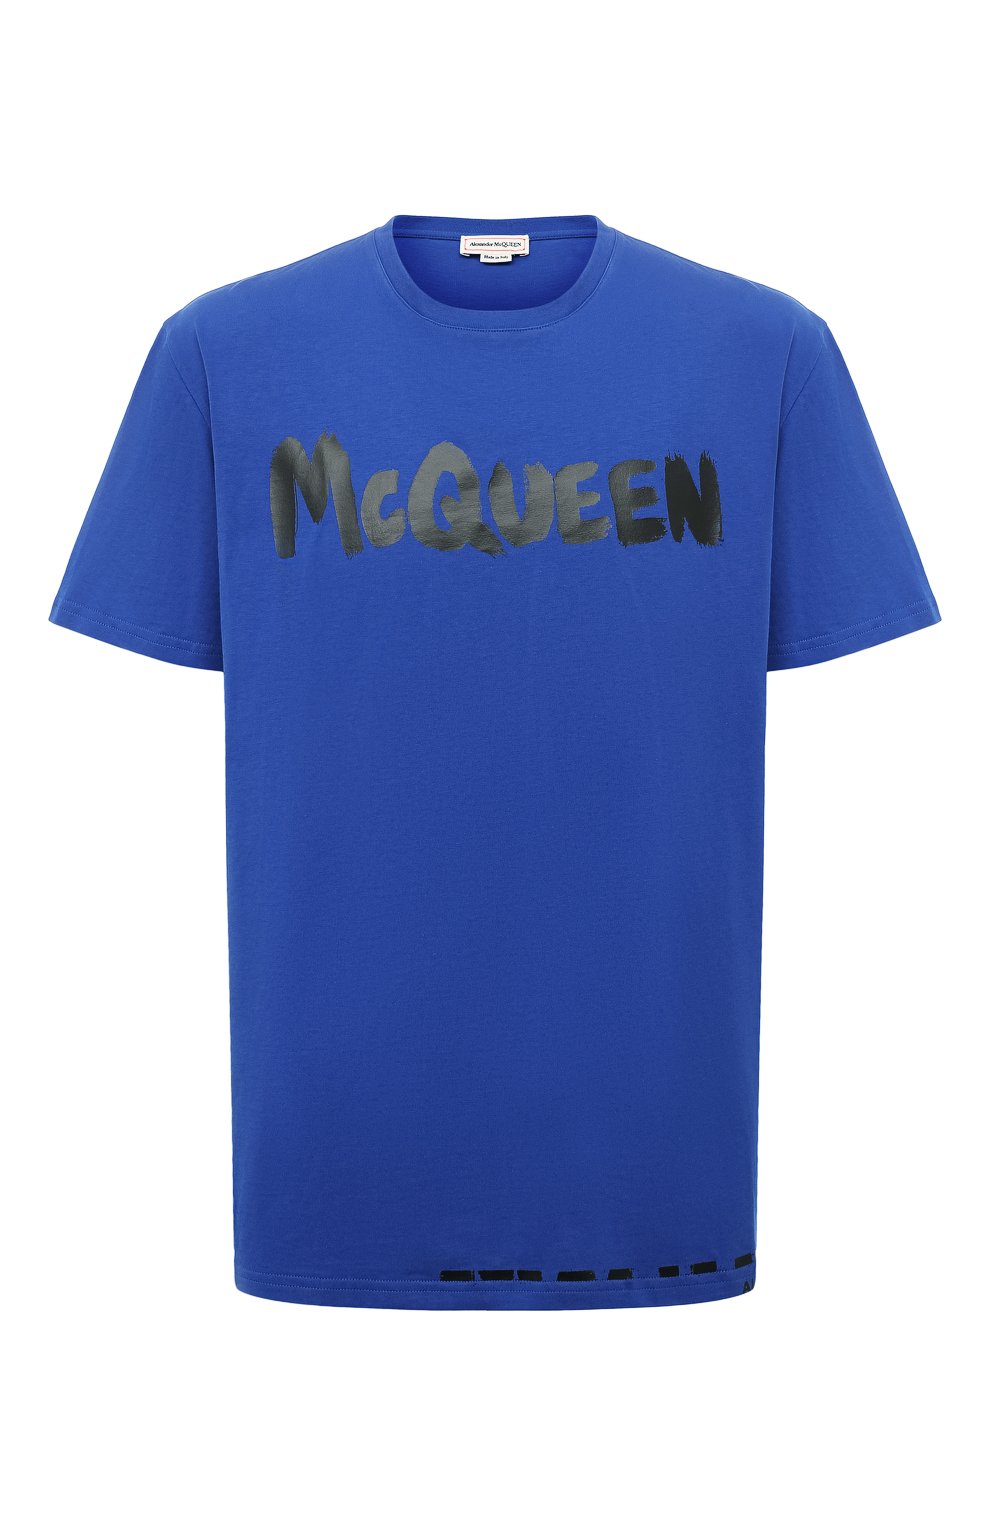 Футболки Alexander McQueen, Хлопковая футболка Alexander McQueen, Италия, Синий, Хлопок: 100%;, 13218661  - купить